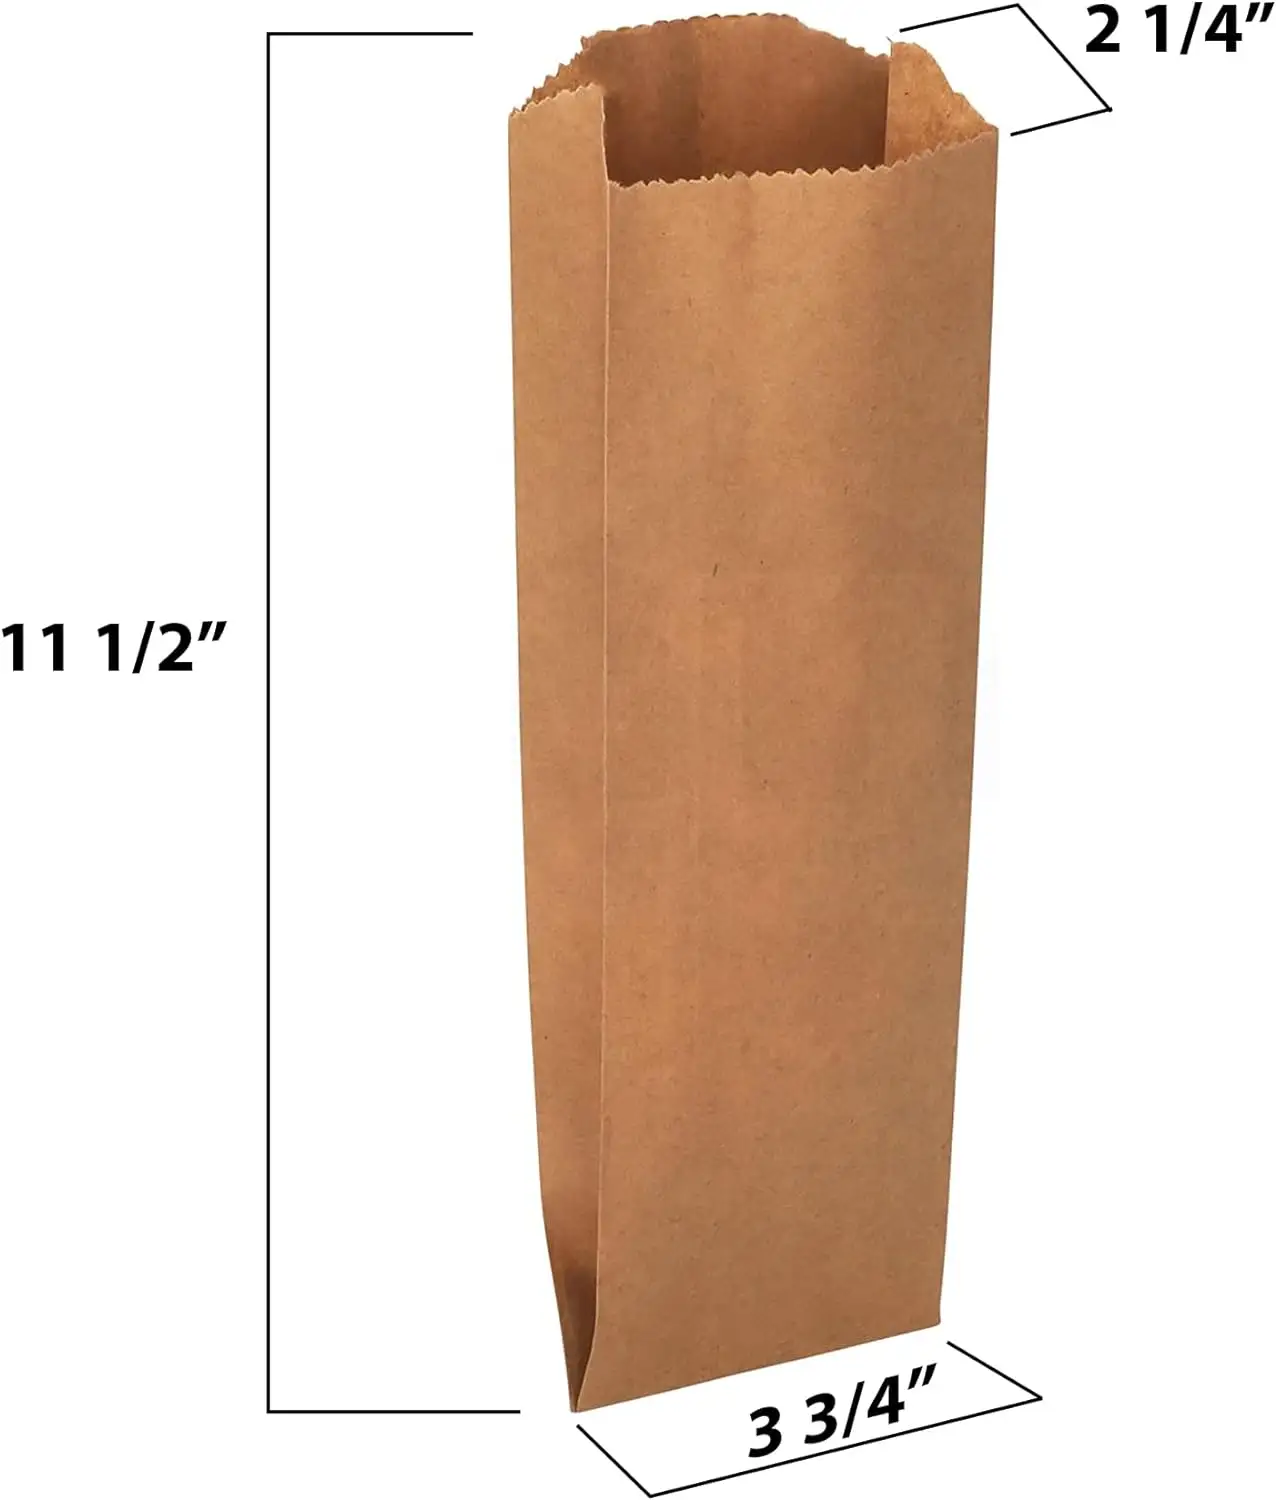 Пакеты из крафт-бумаги размером с пинту, которые можно использовать в качестве винного мешка или для свежеиспеченных изделий, 3 3/4, х 2 1/4, г х 11 1/2 ч, от MT продуктов